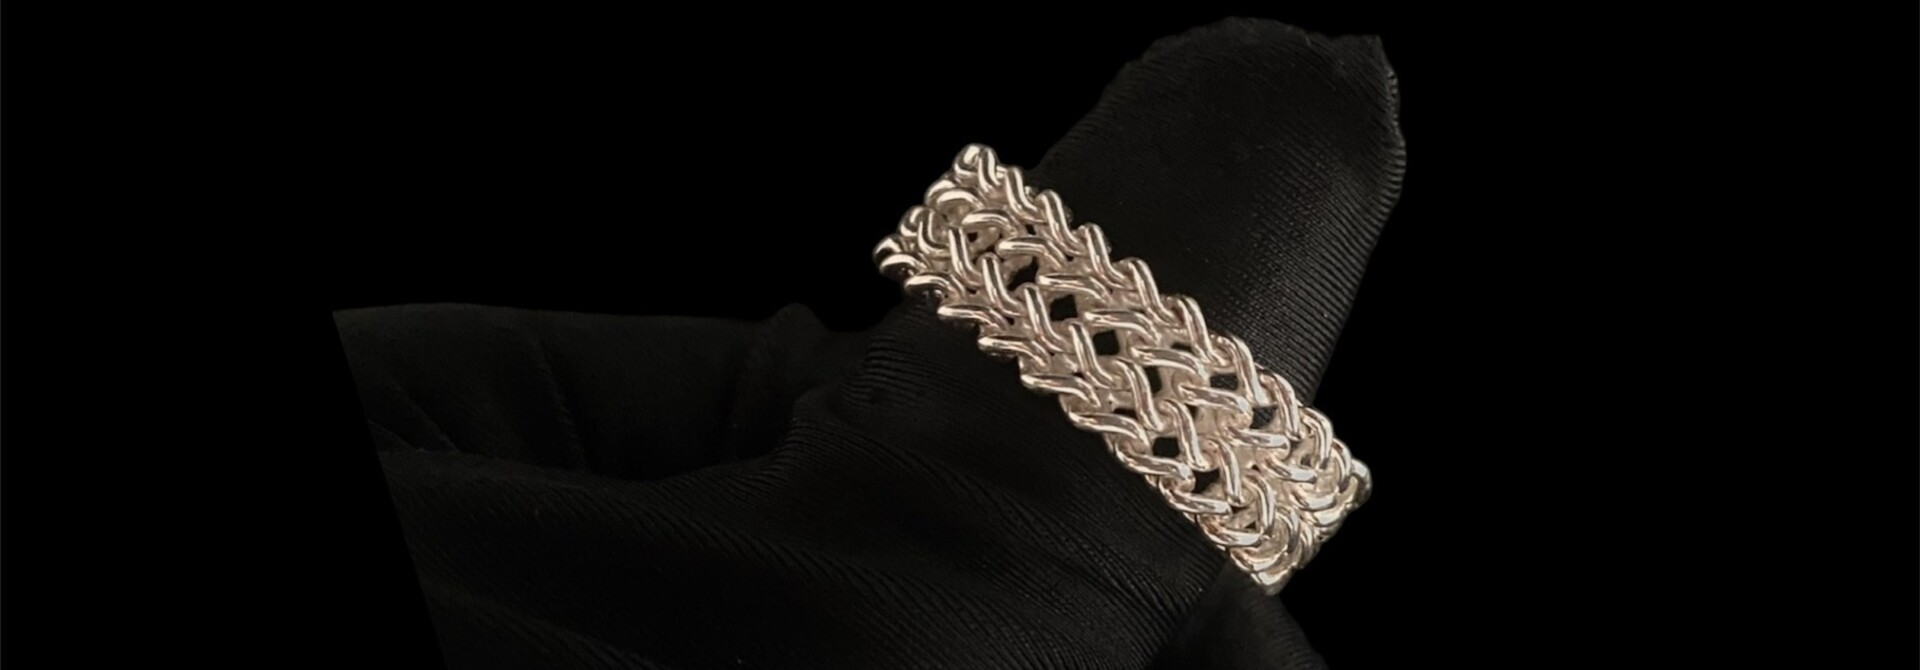 Ring zilver dubbele Franco chain flexibel